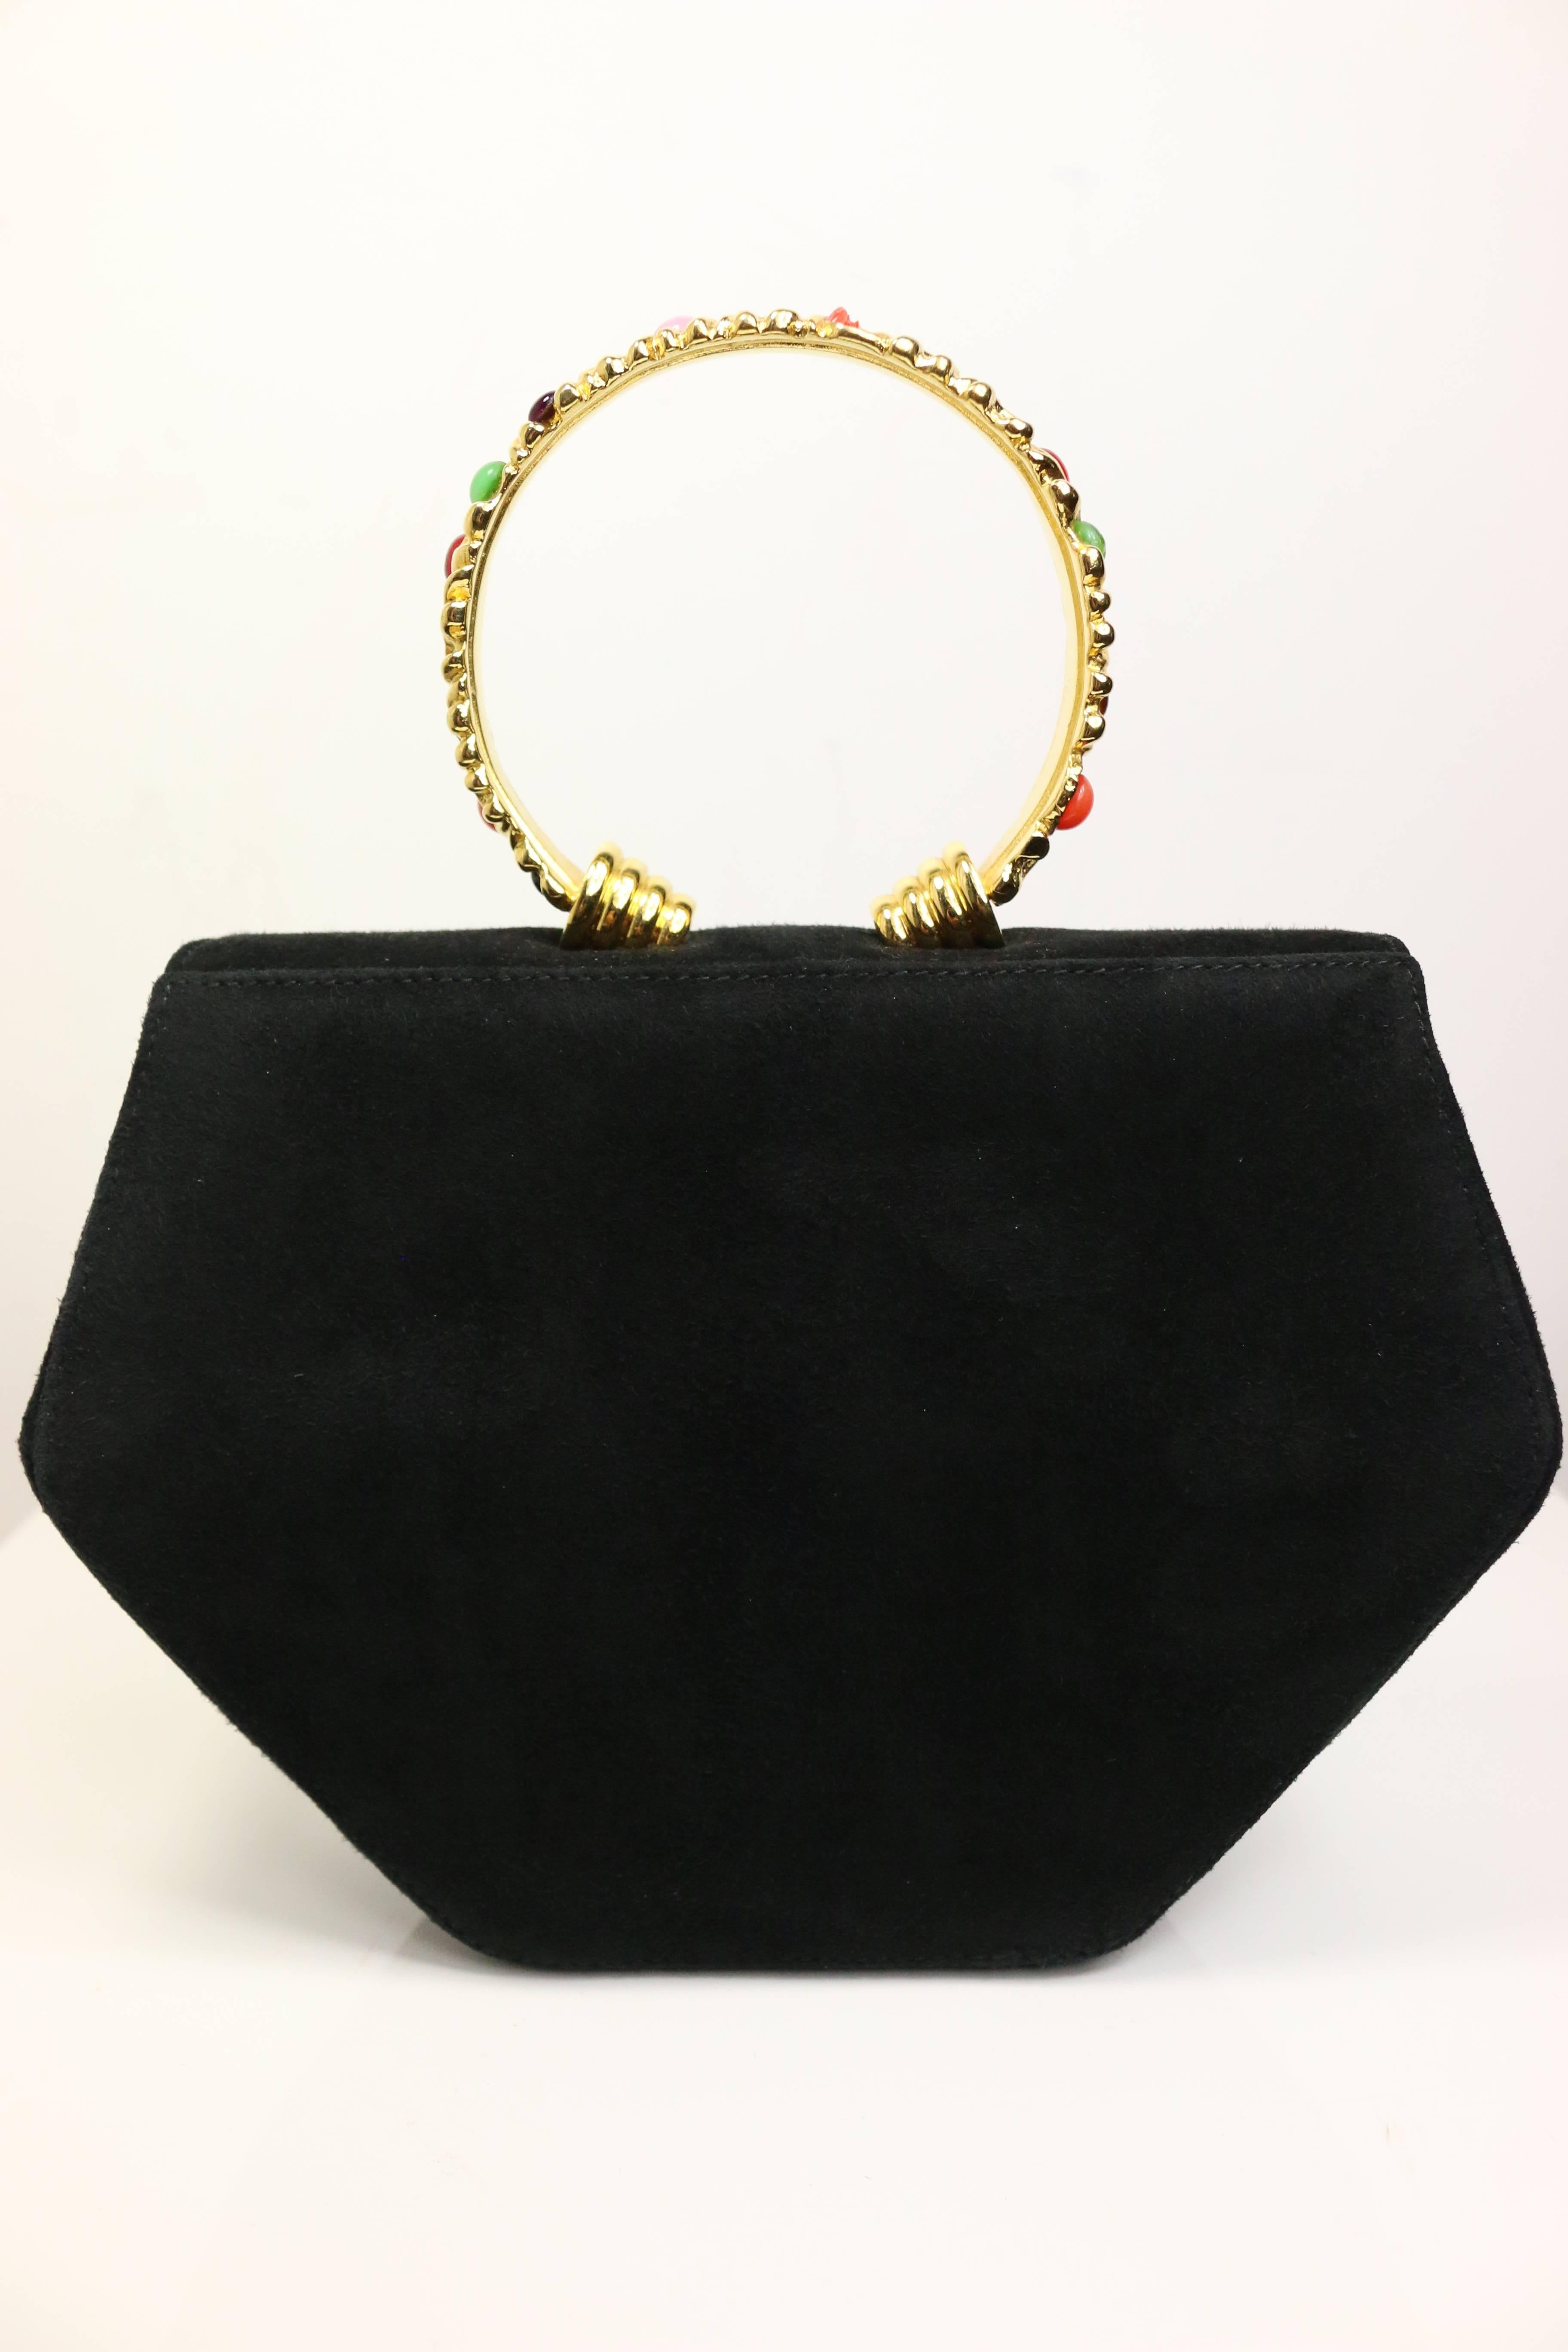 Rodo Black Suede Gold Toned Handle Octagon Handbag with Strap  1